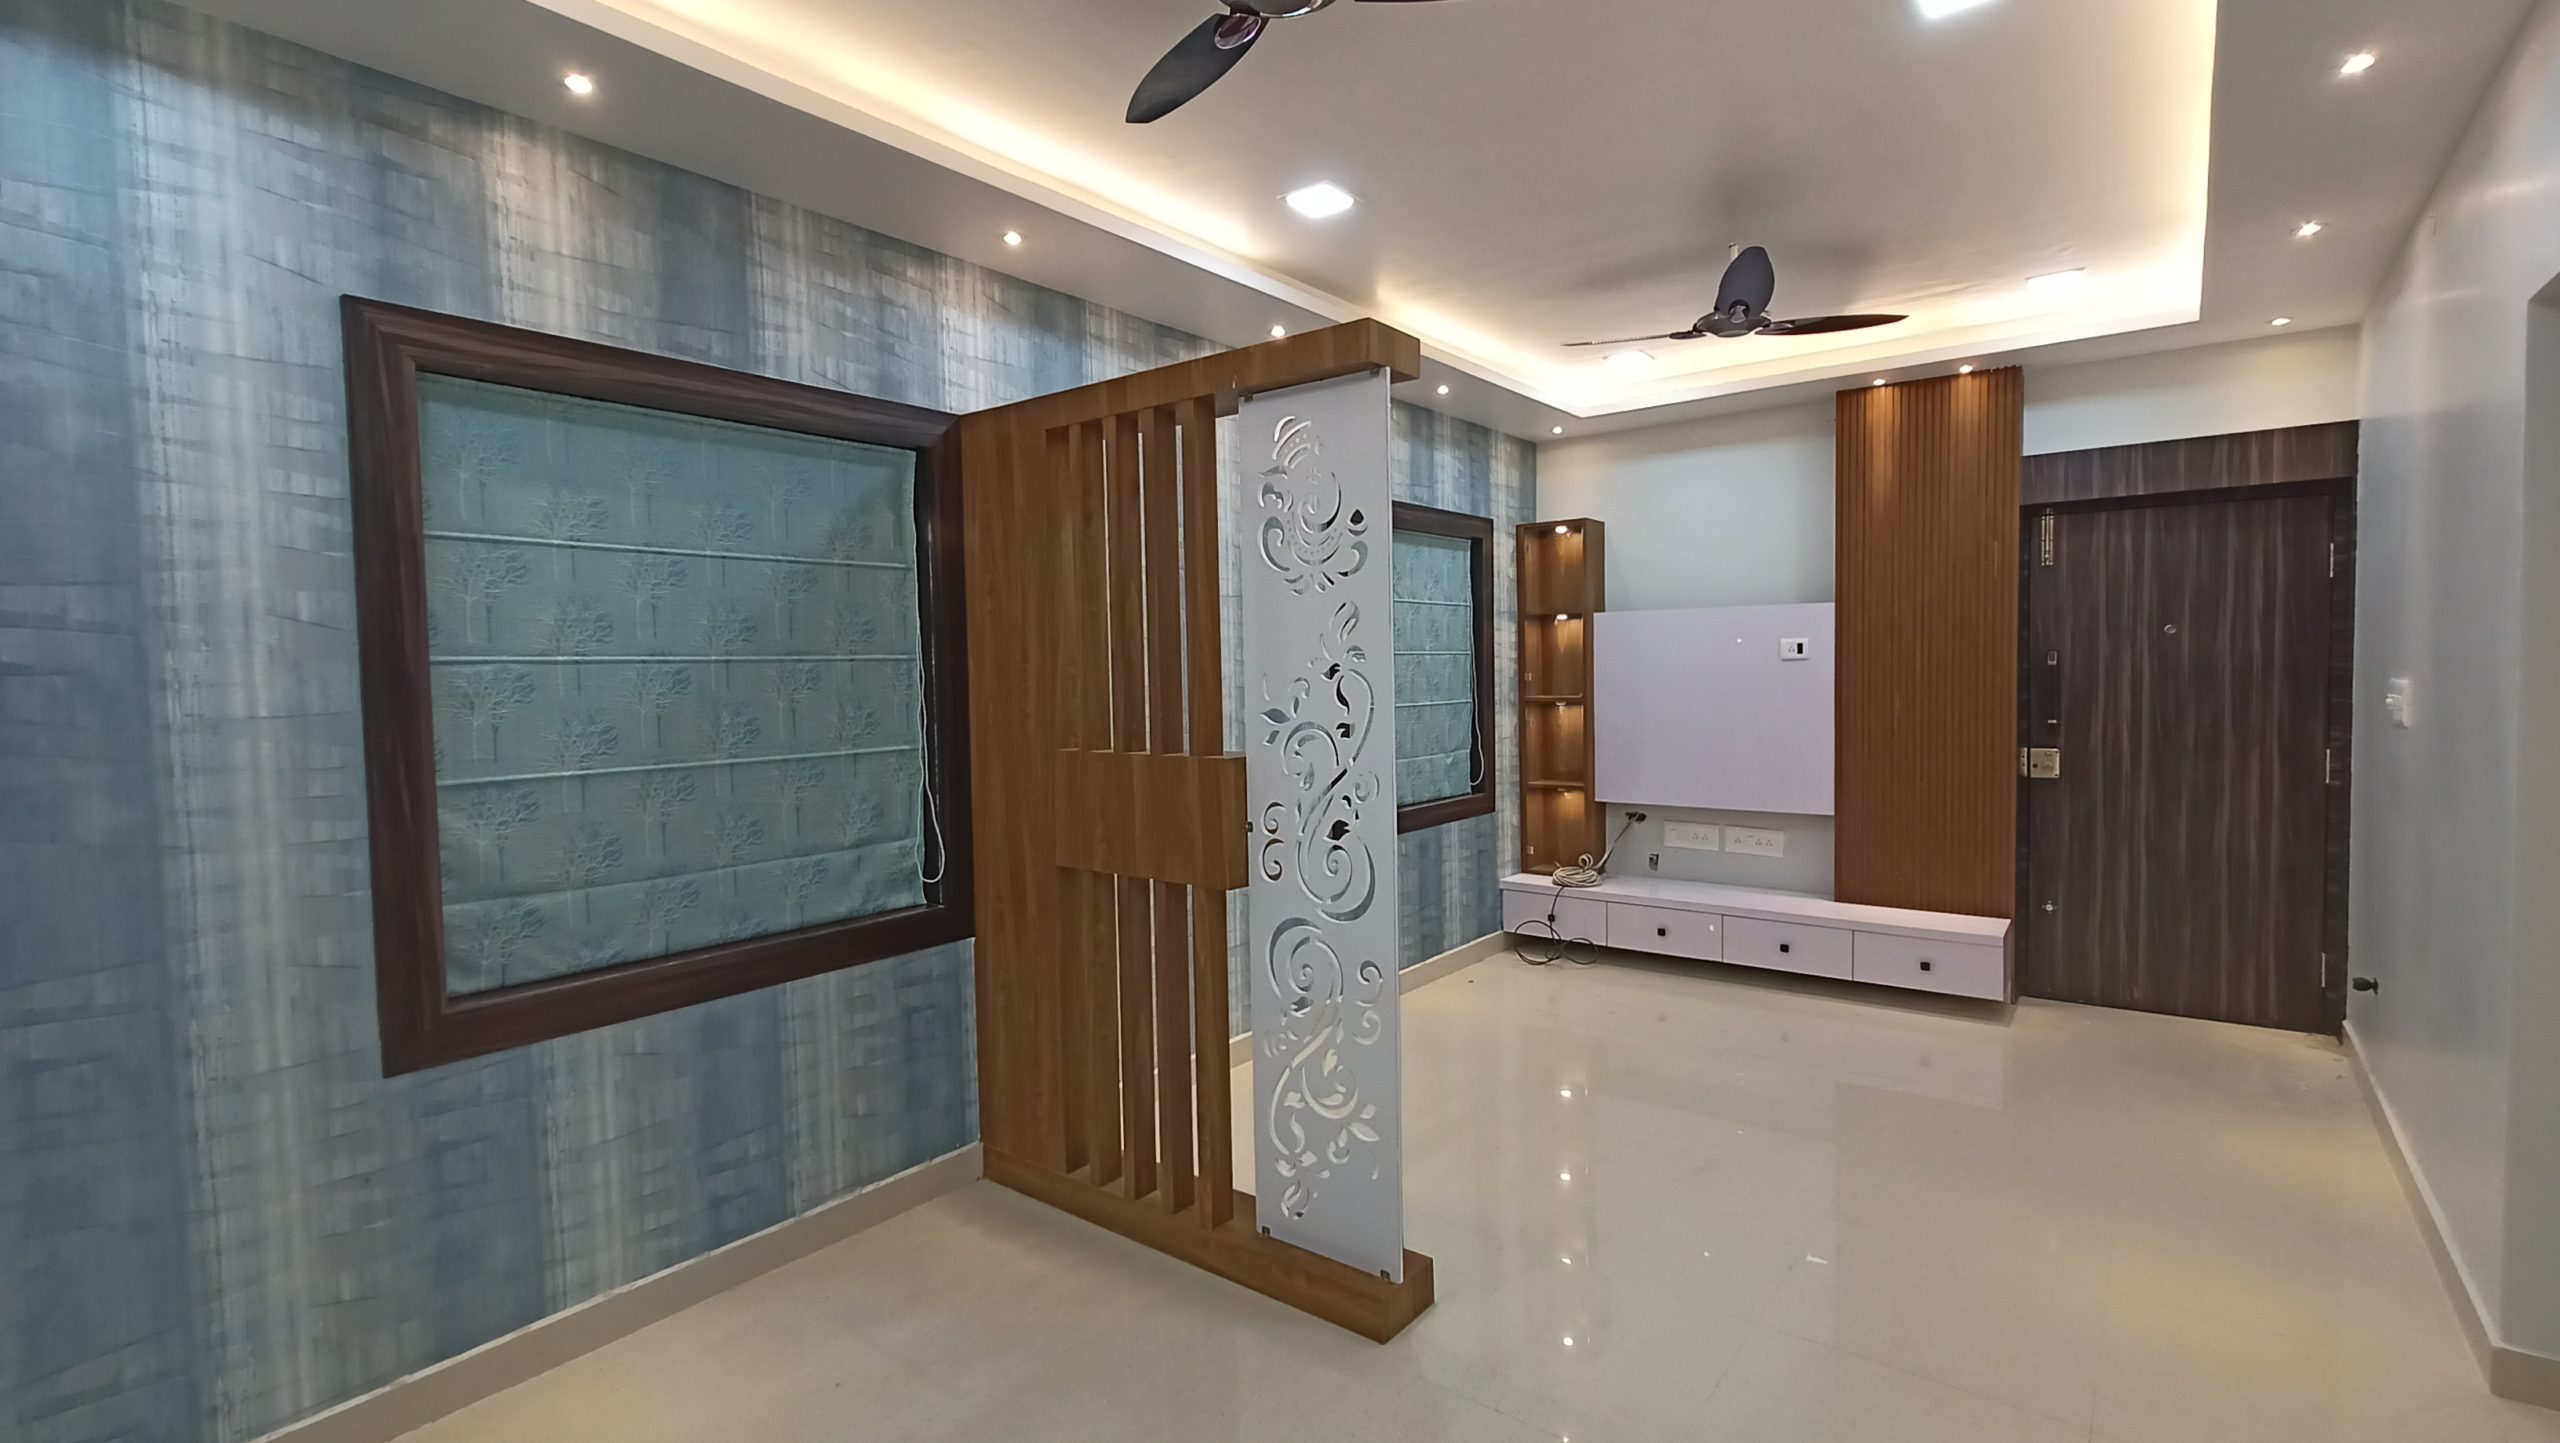 Get the Best Interior Design Services in Bhubaneswar